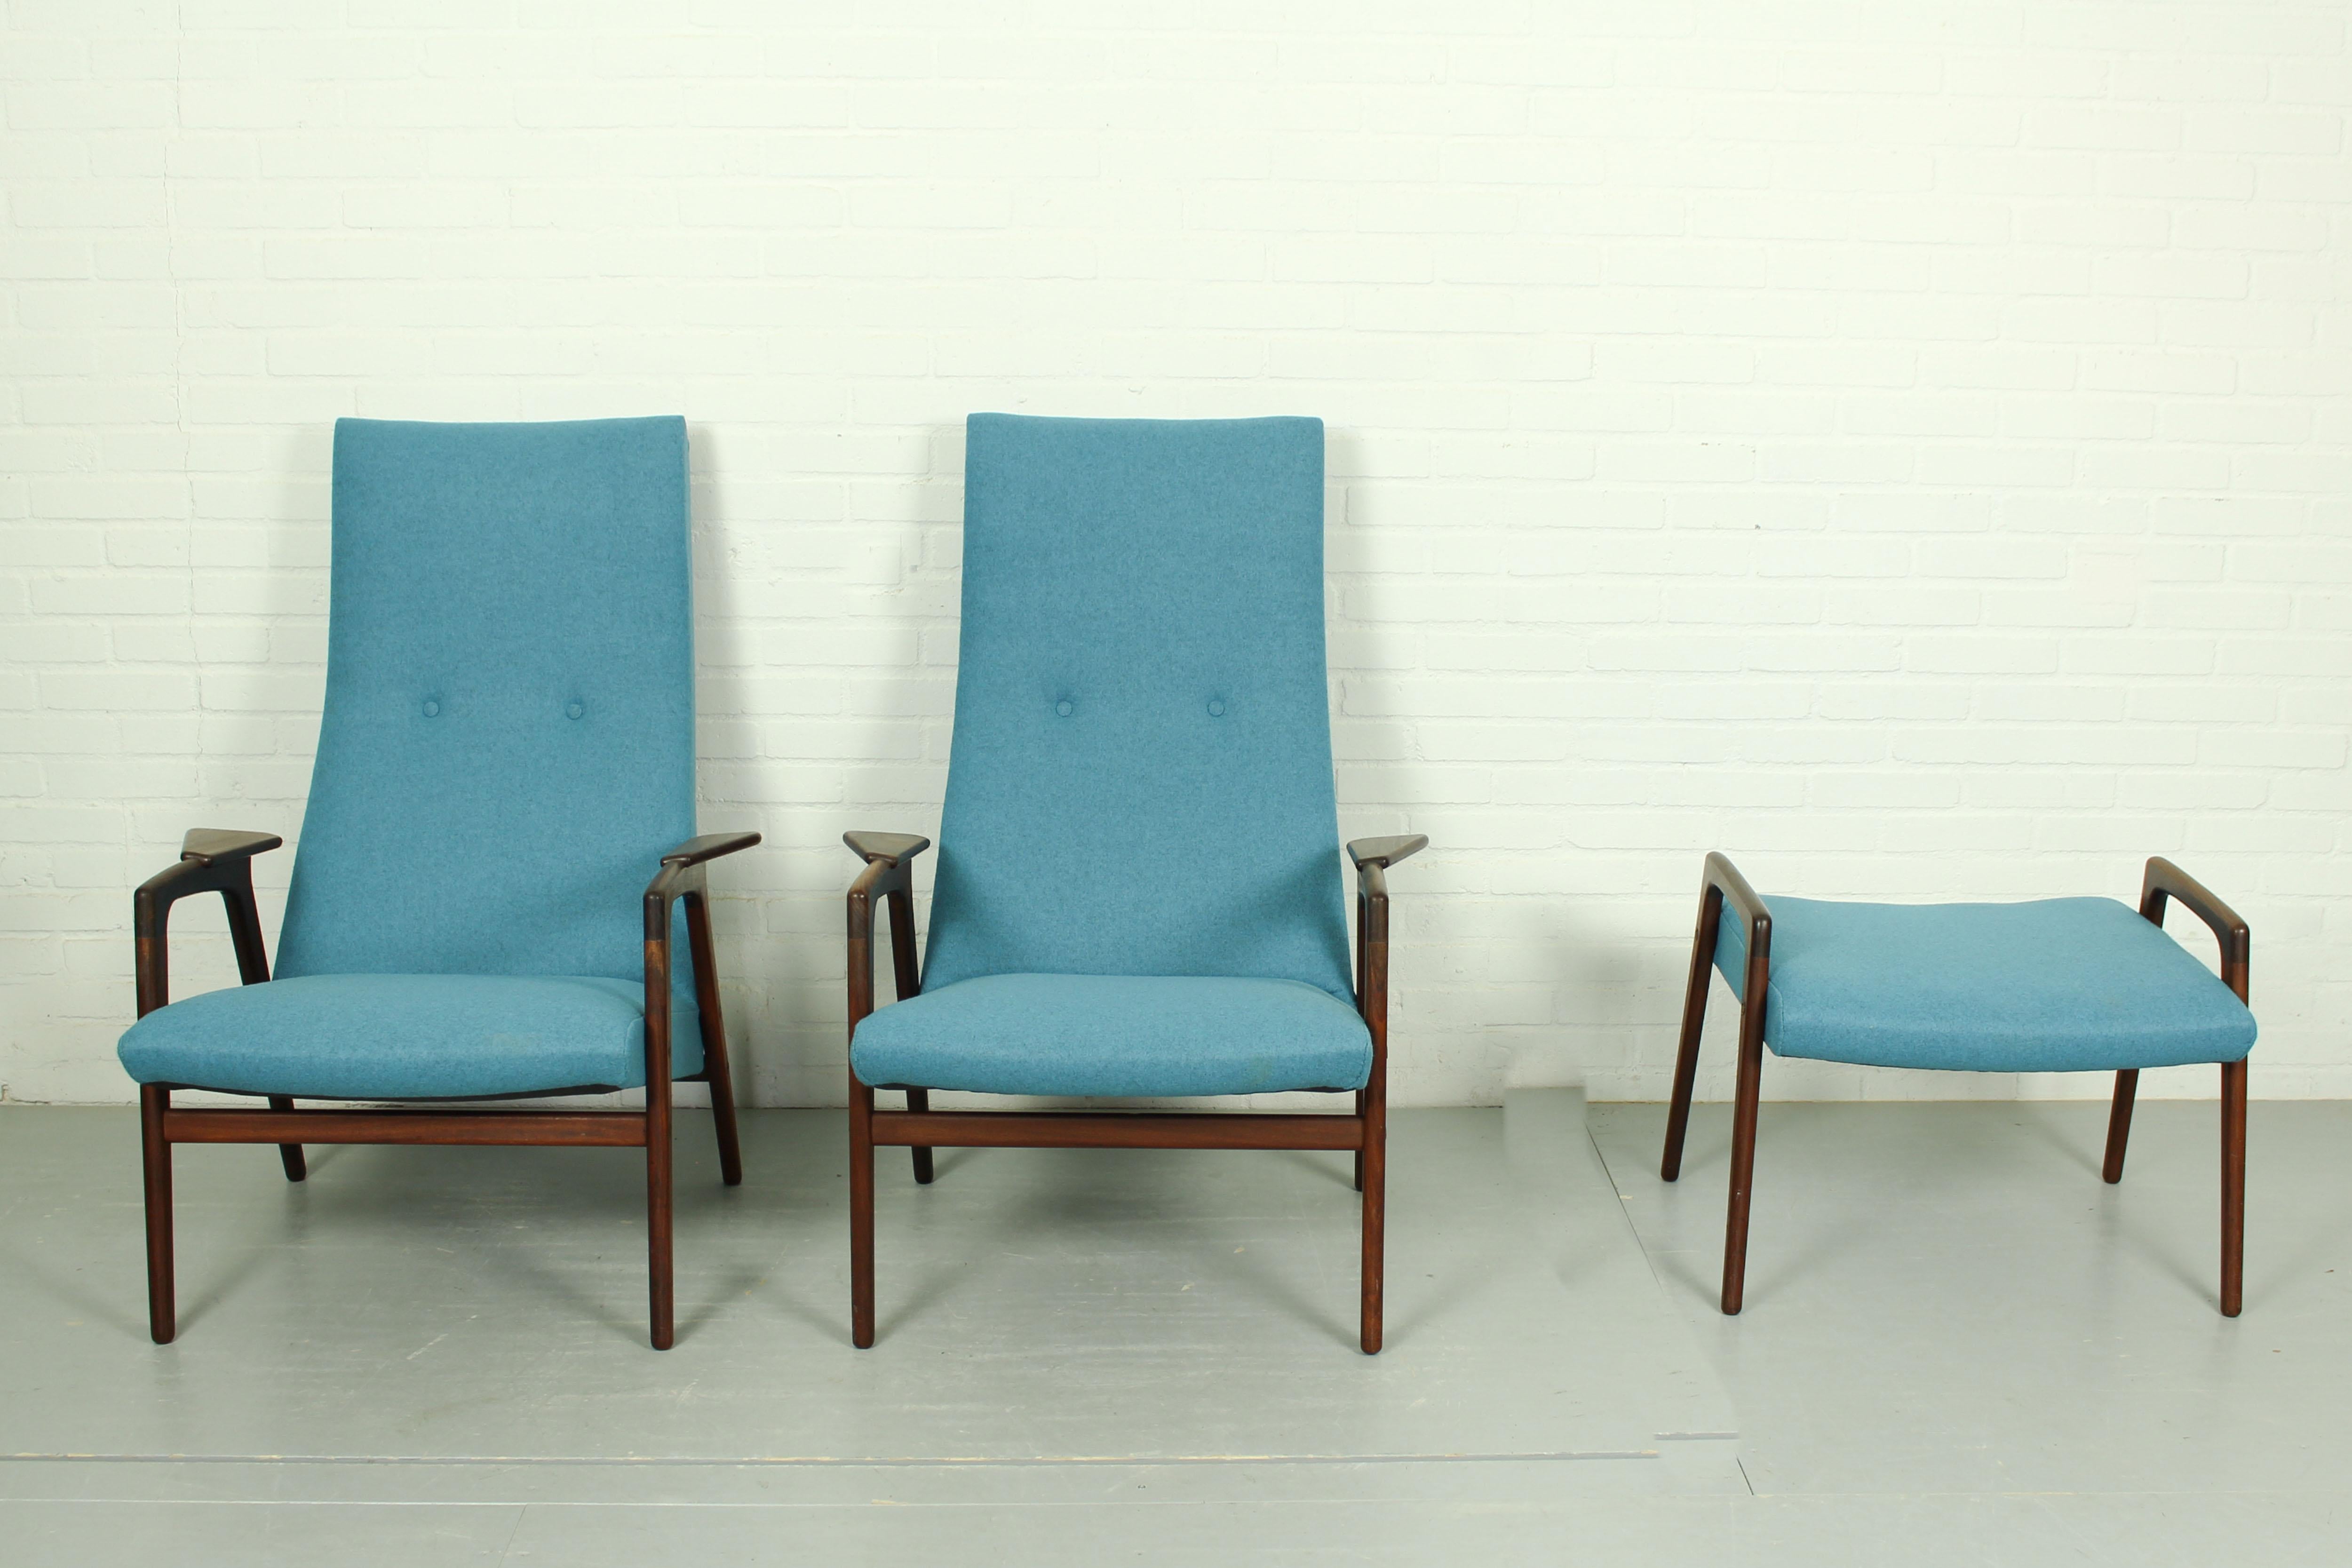 Cet ensemble de 2 chaises longues danoises avec ottoman assorti a été conçu par le designer suédois Yngve Ekström et fabriqué par Pastoe dans les années 1960. Les articles ont été retapissés dans un magnifique feutre de laine mélangée bleu et le